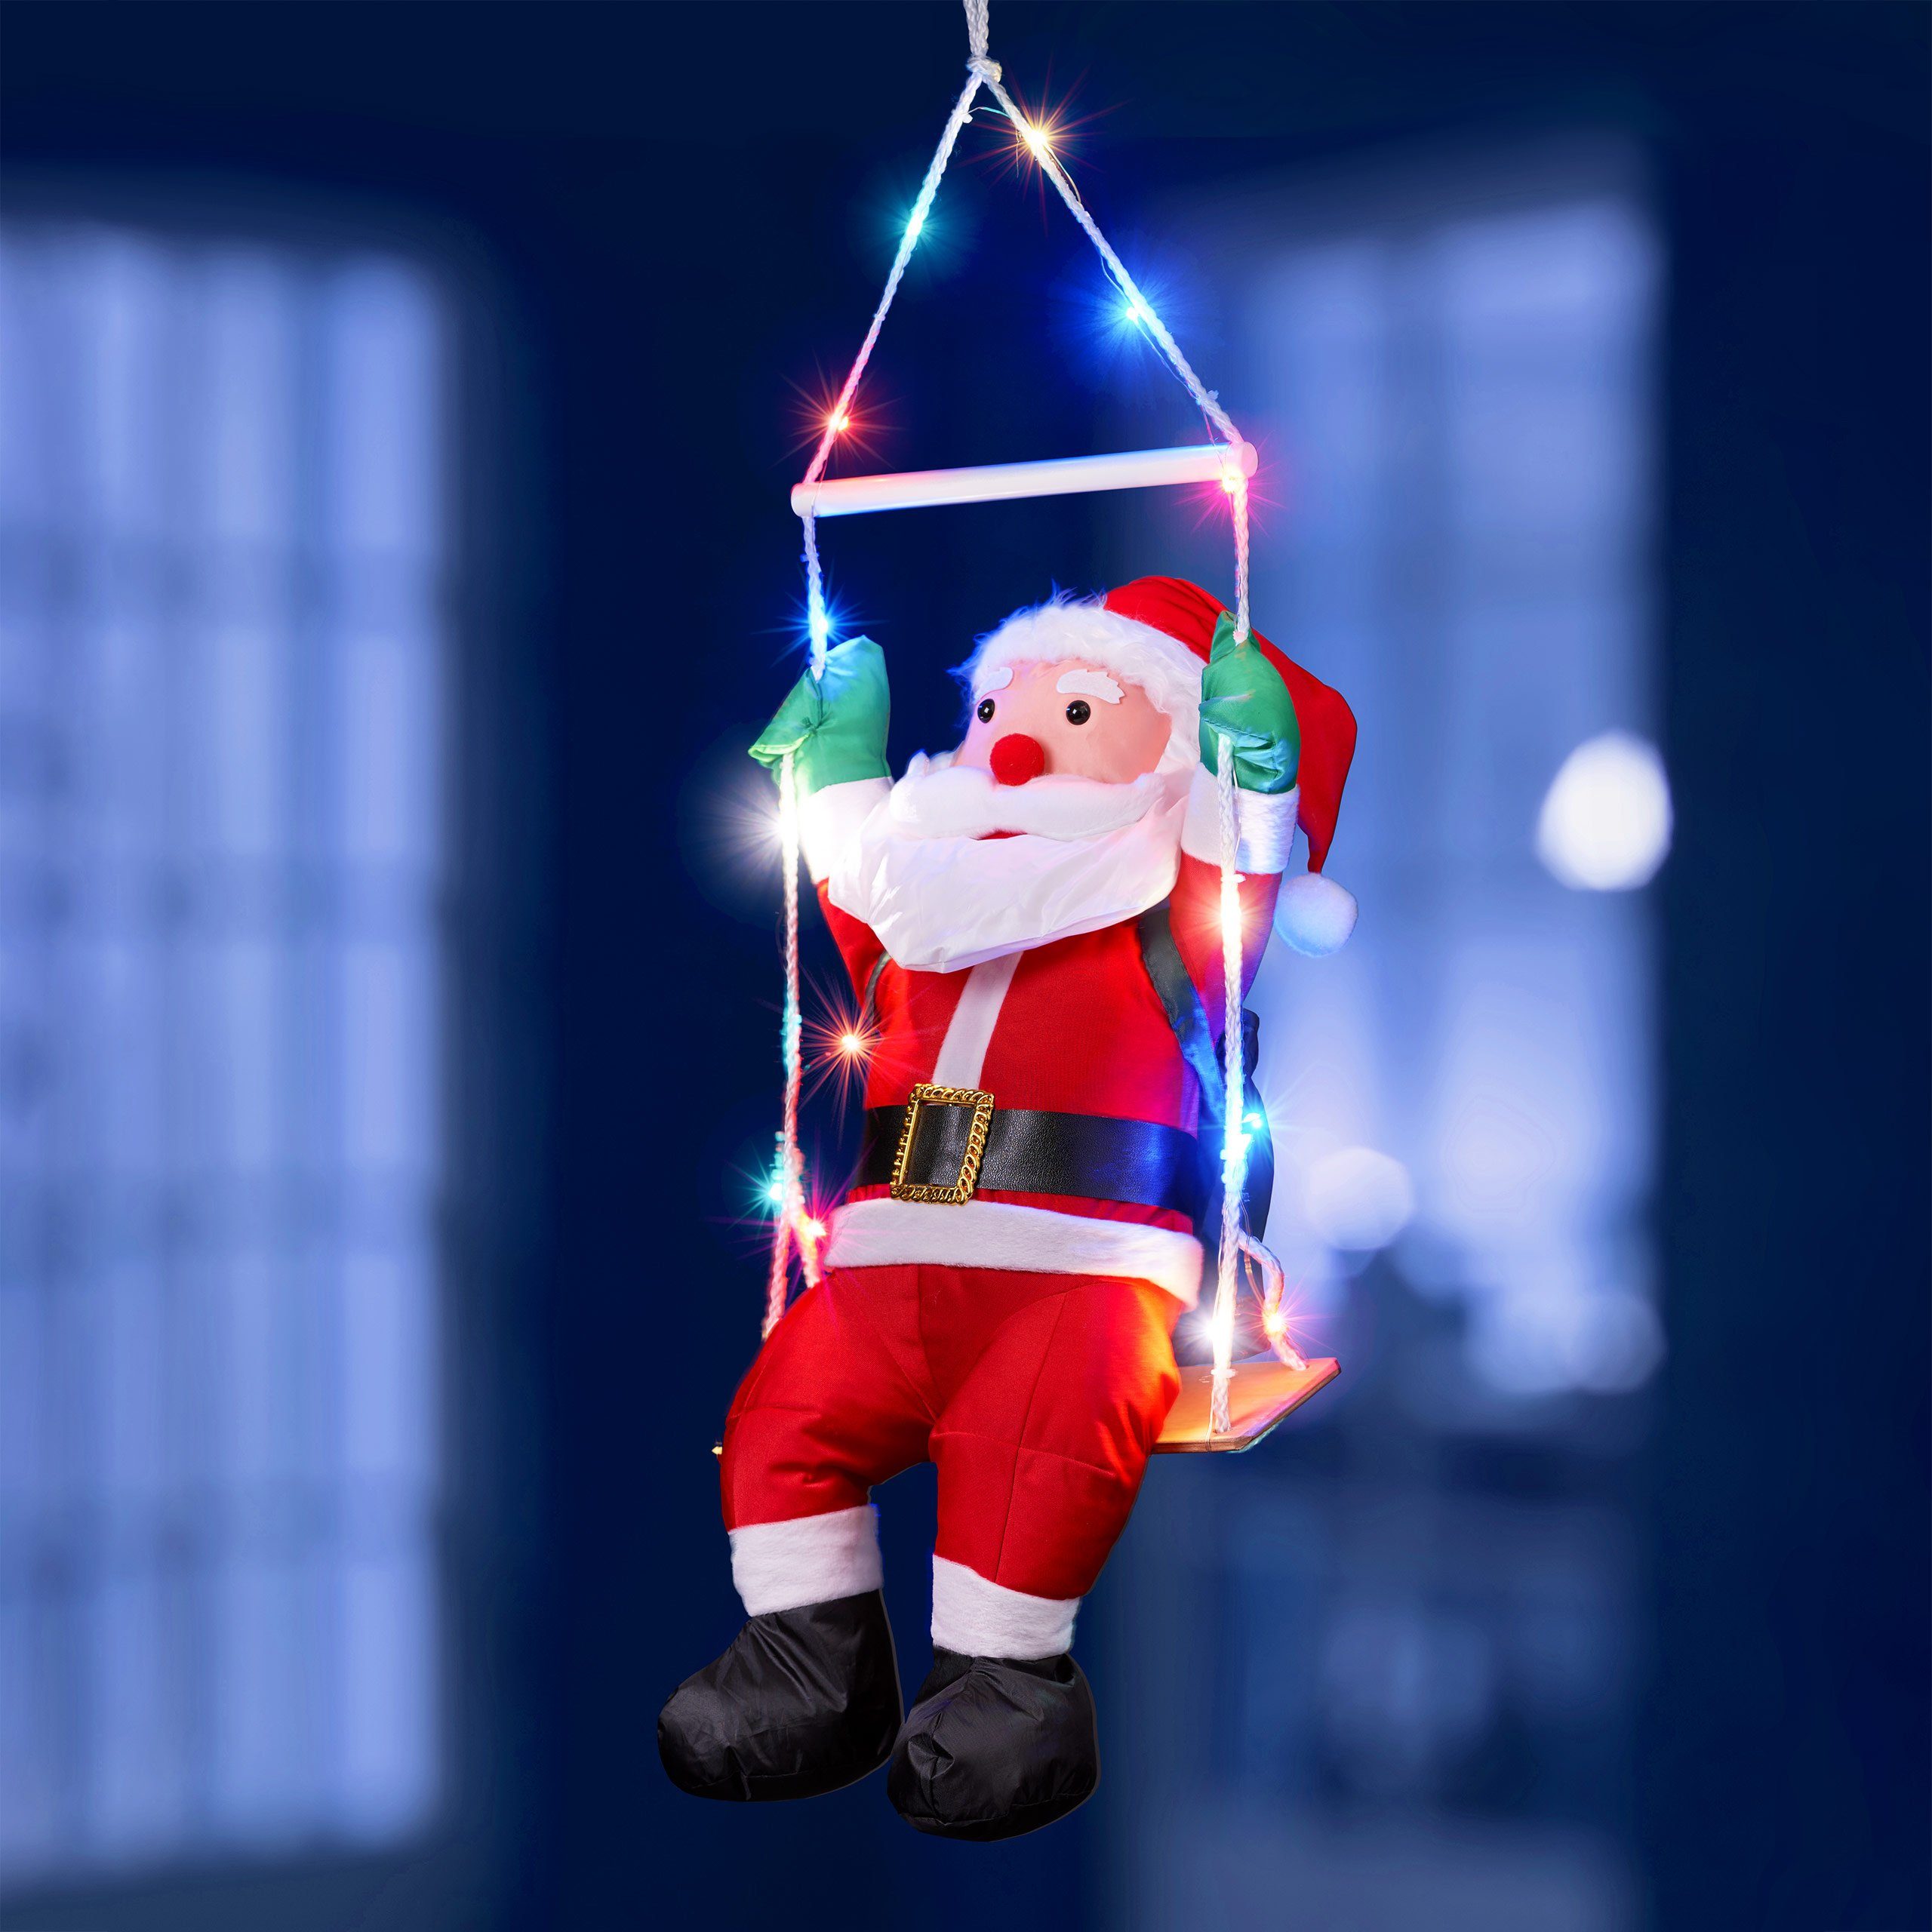 BONETTI Raburg Weihnachtsmann Schaukel 20 XL Timer, bunten mit Deko-Figur mit groß, 90 Weihnachten, cm für cm LEDs, 6 ca. Gesamthöhe: ca. h auf bunten weiche LEDs, 60